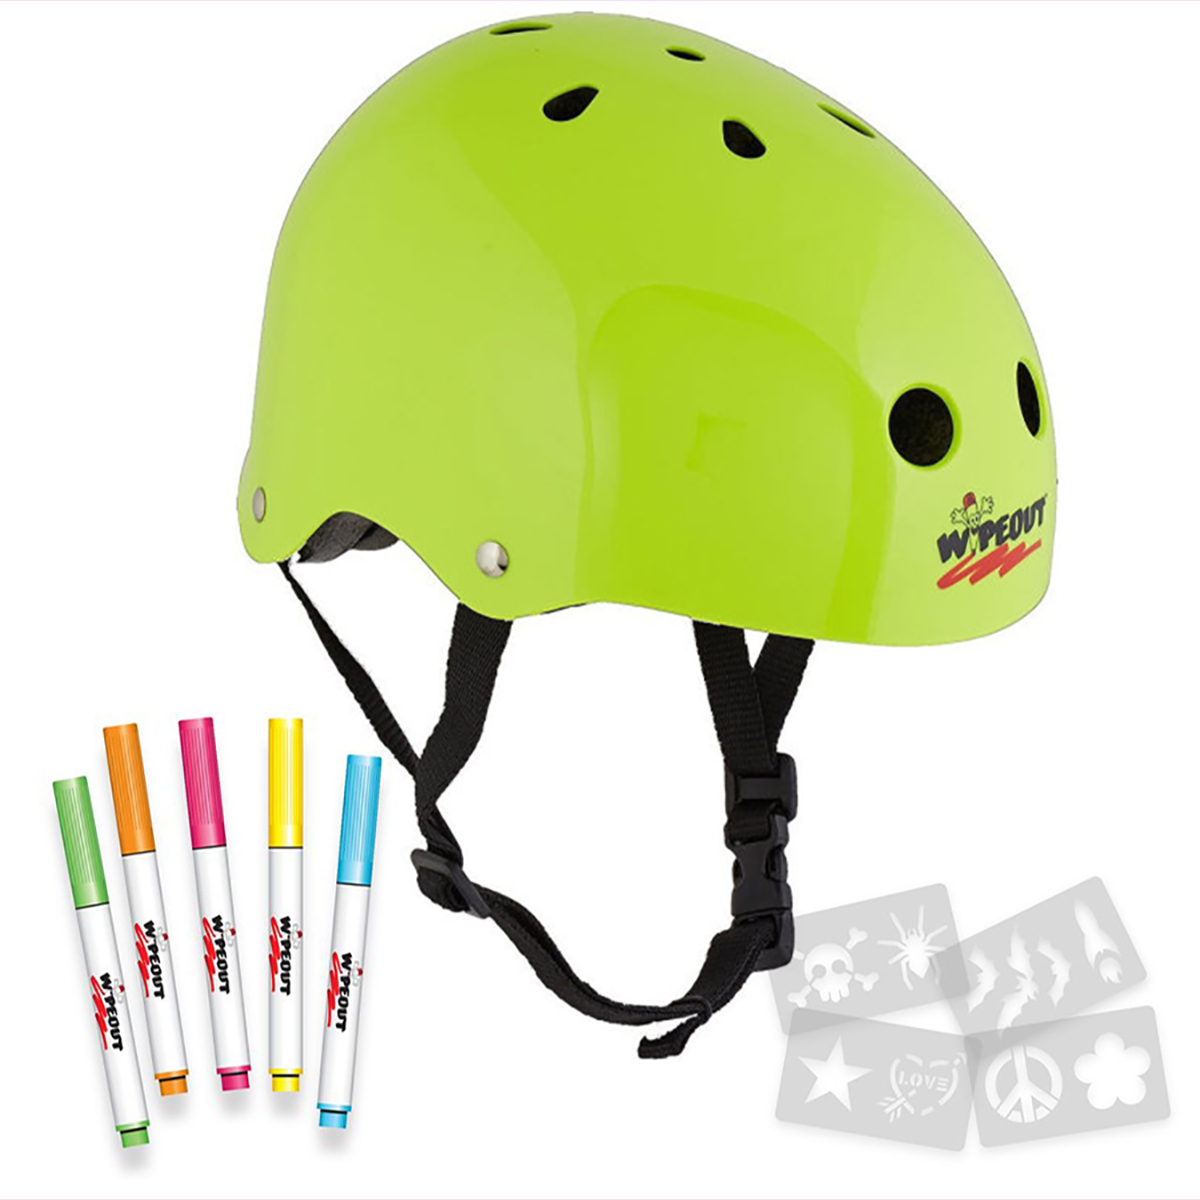 Шлем защитный спортивный WIPEOUT Neon Zest с фломастерами и трафаретами размер M 5+ обхват головы 49-52 см - фото 4